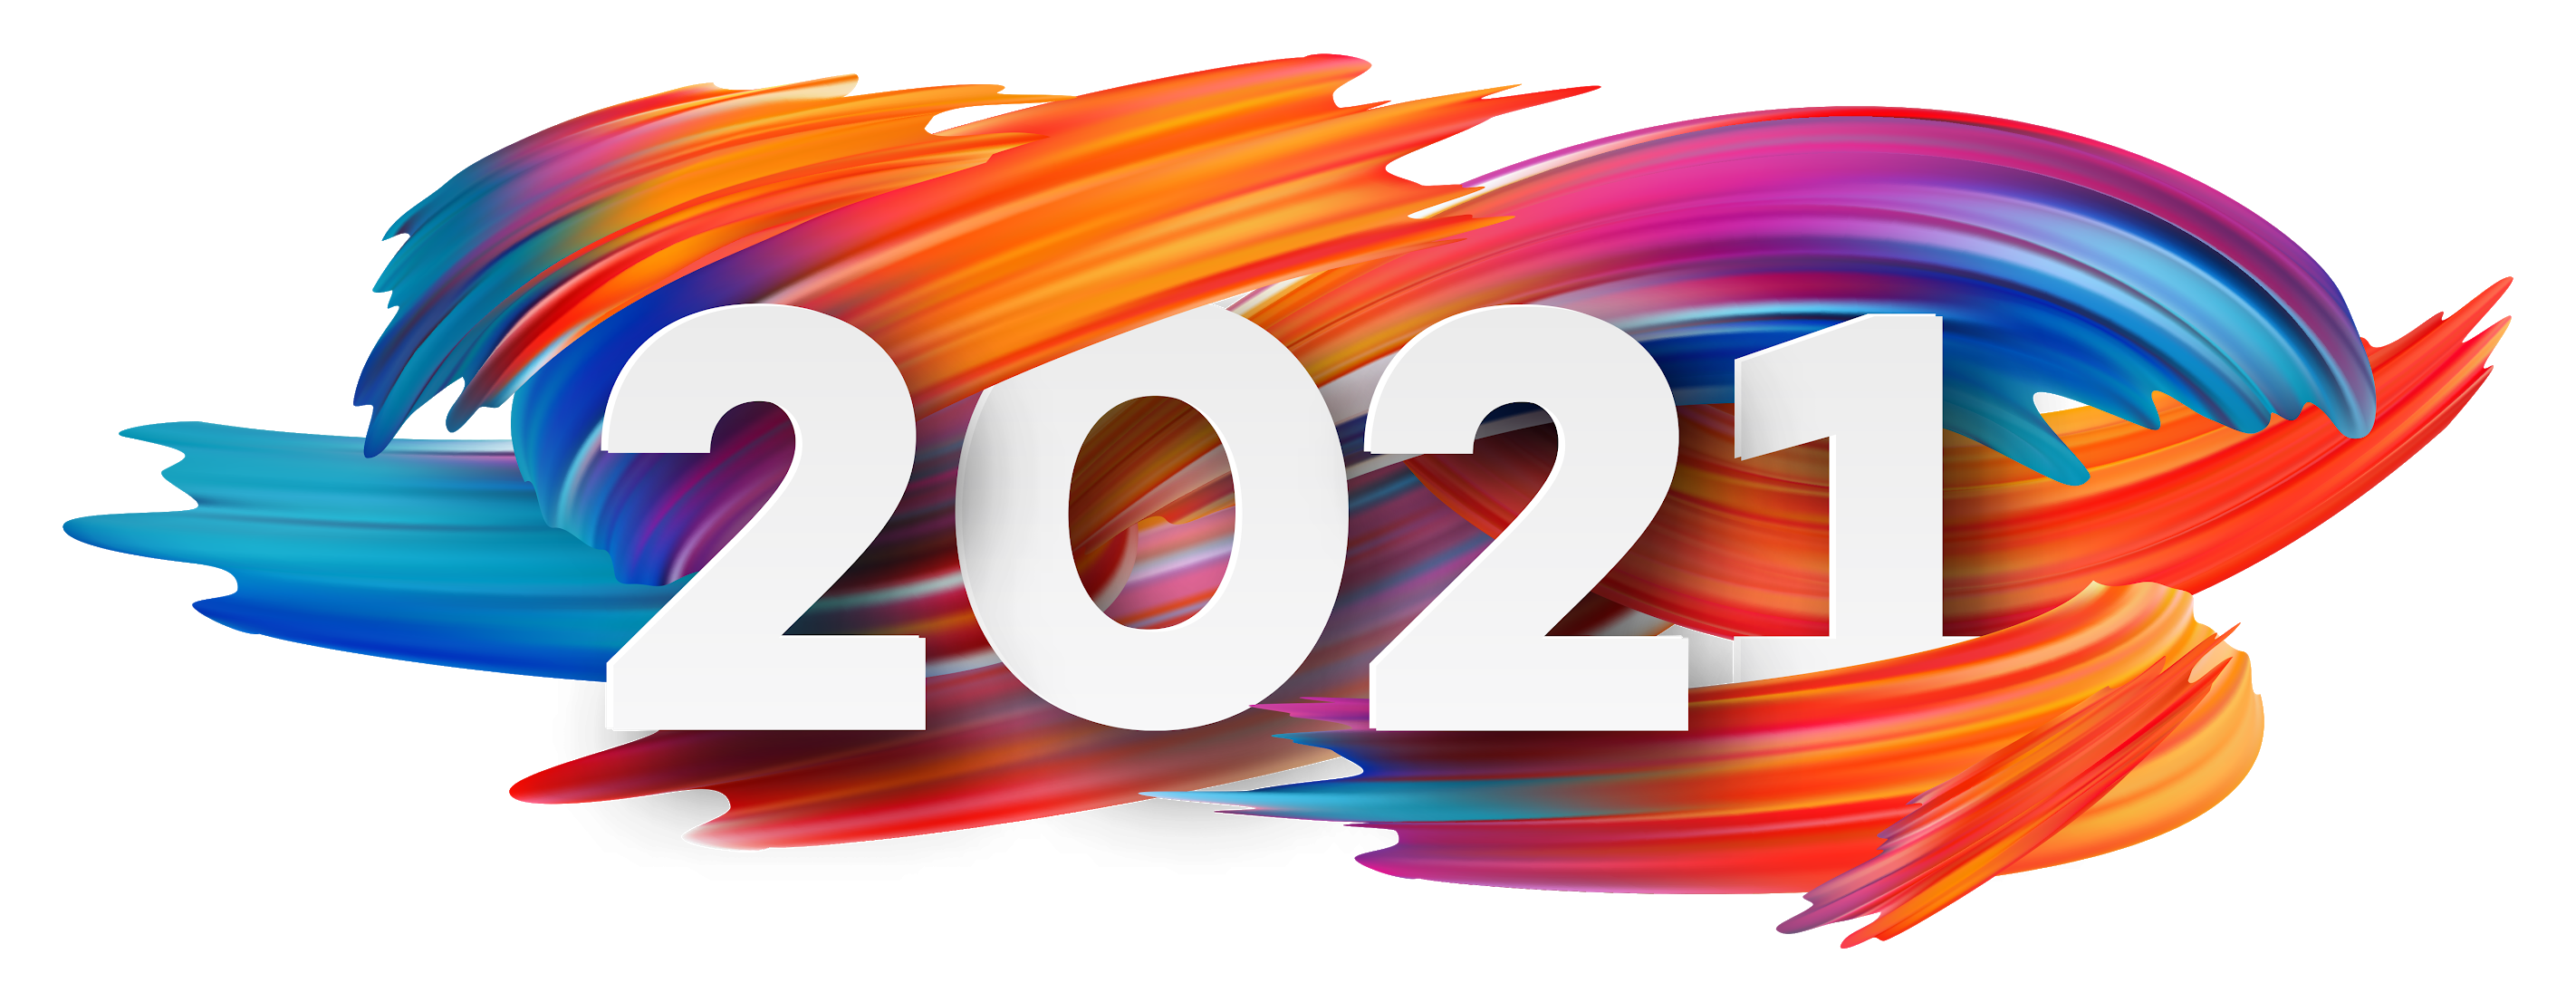 Logos 2021. 2021 Надпись. Логотипы 2021. Яркий логотип. 2022 Надпись.